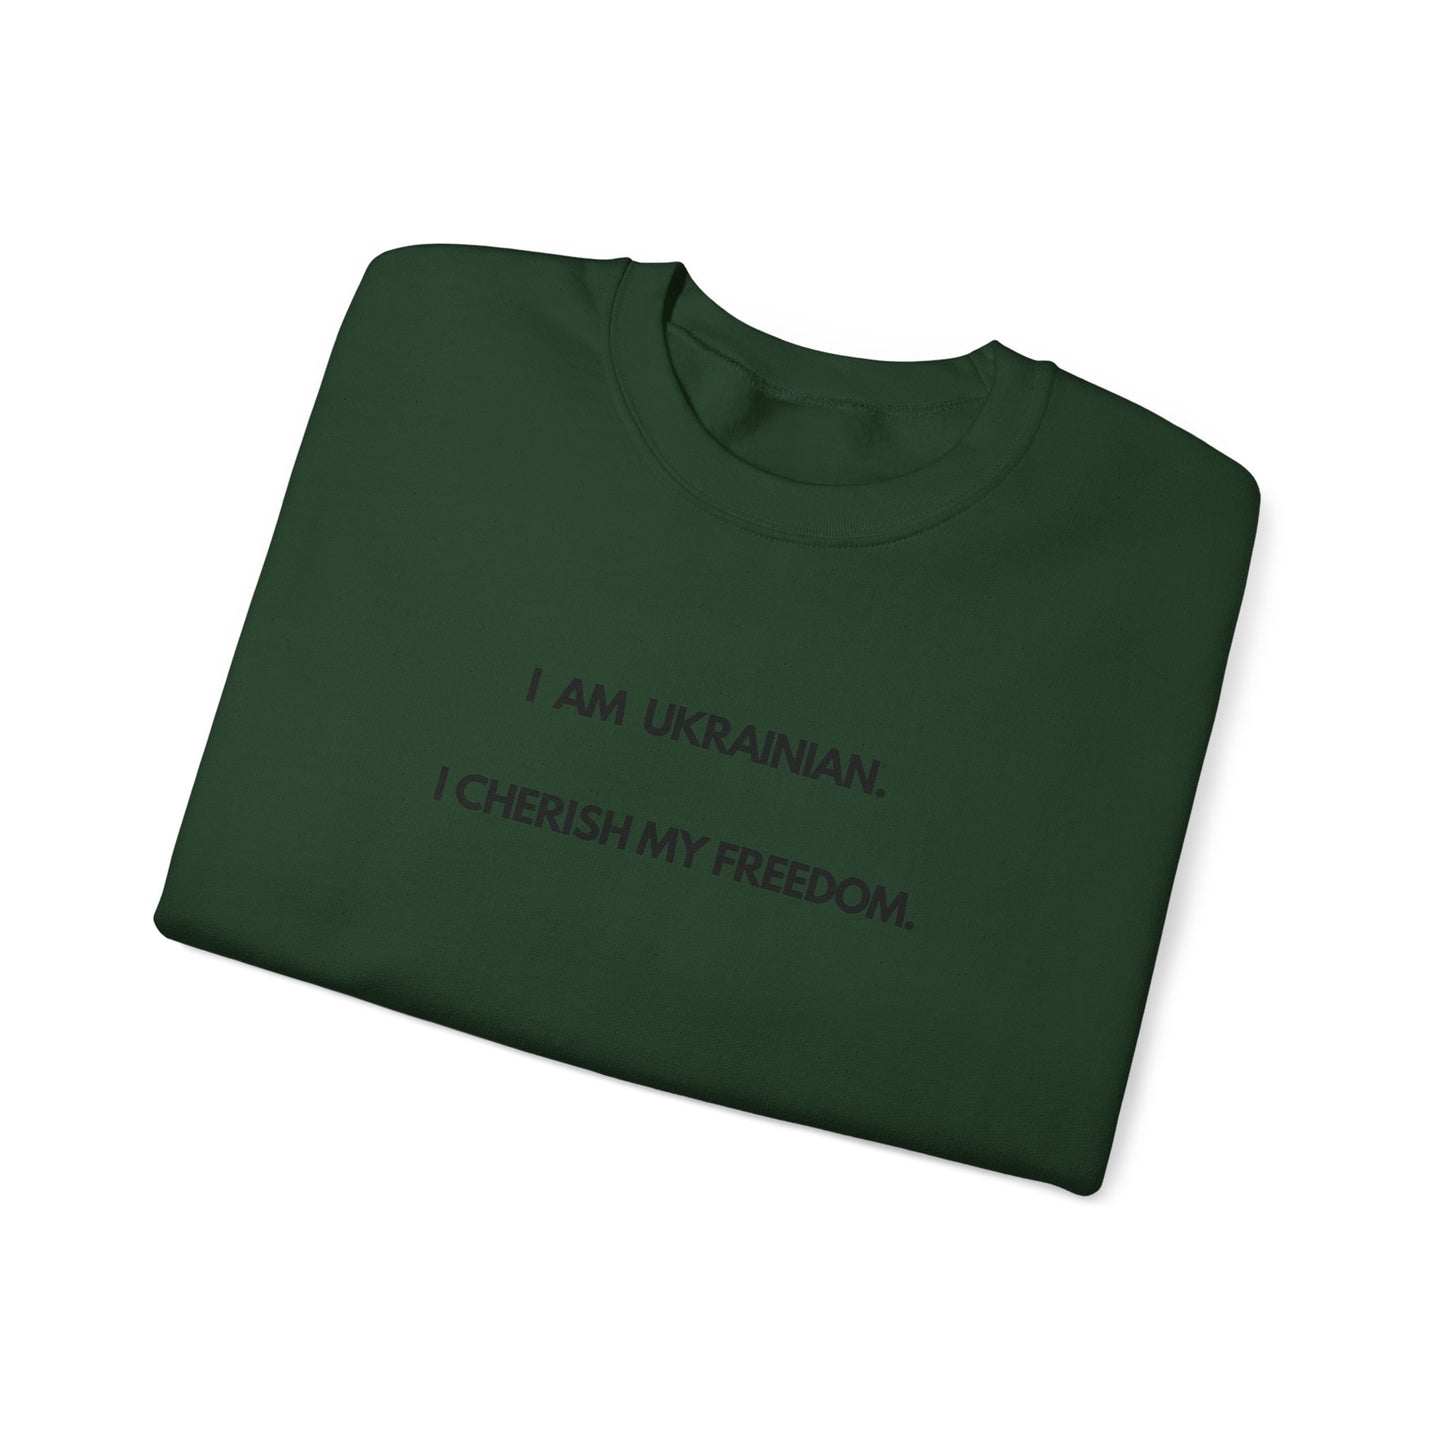 I am Ukrainian: Barabolia Crewneck Sweatshirt